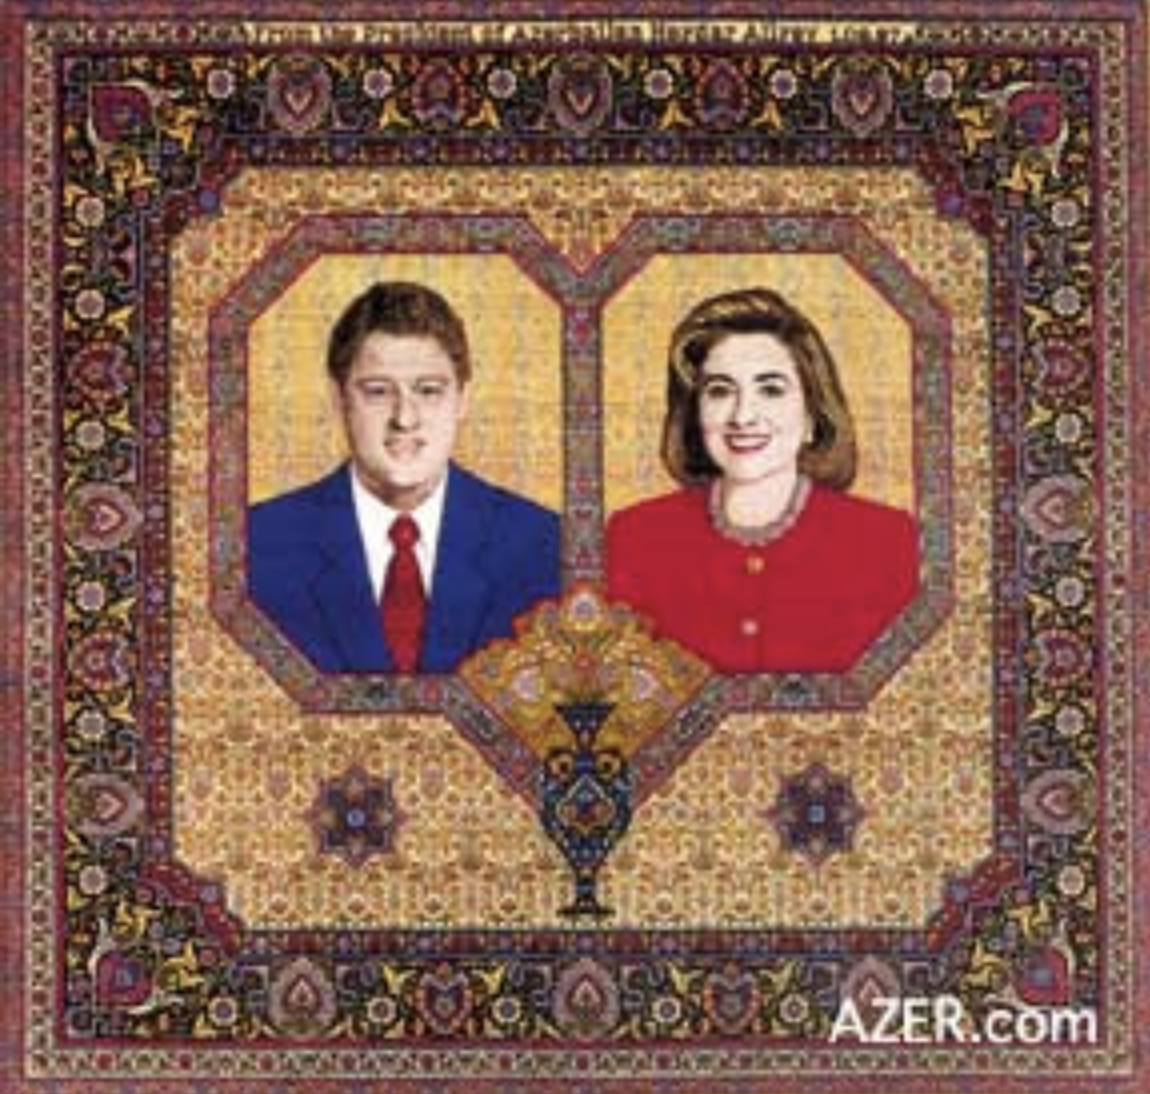 Azeri com. Портрет на ковре. Ковровая для портрета. Модные портреты с ковром.